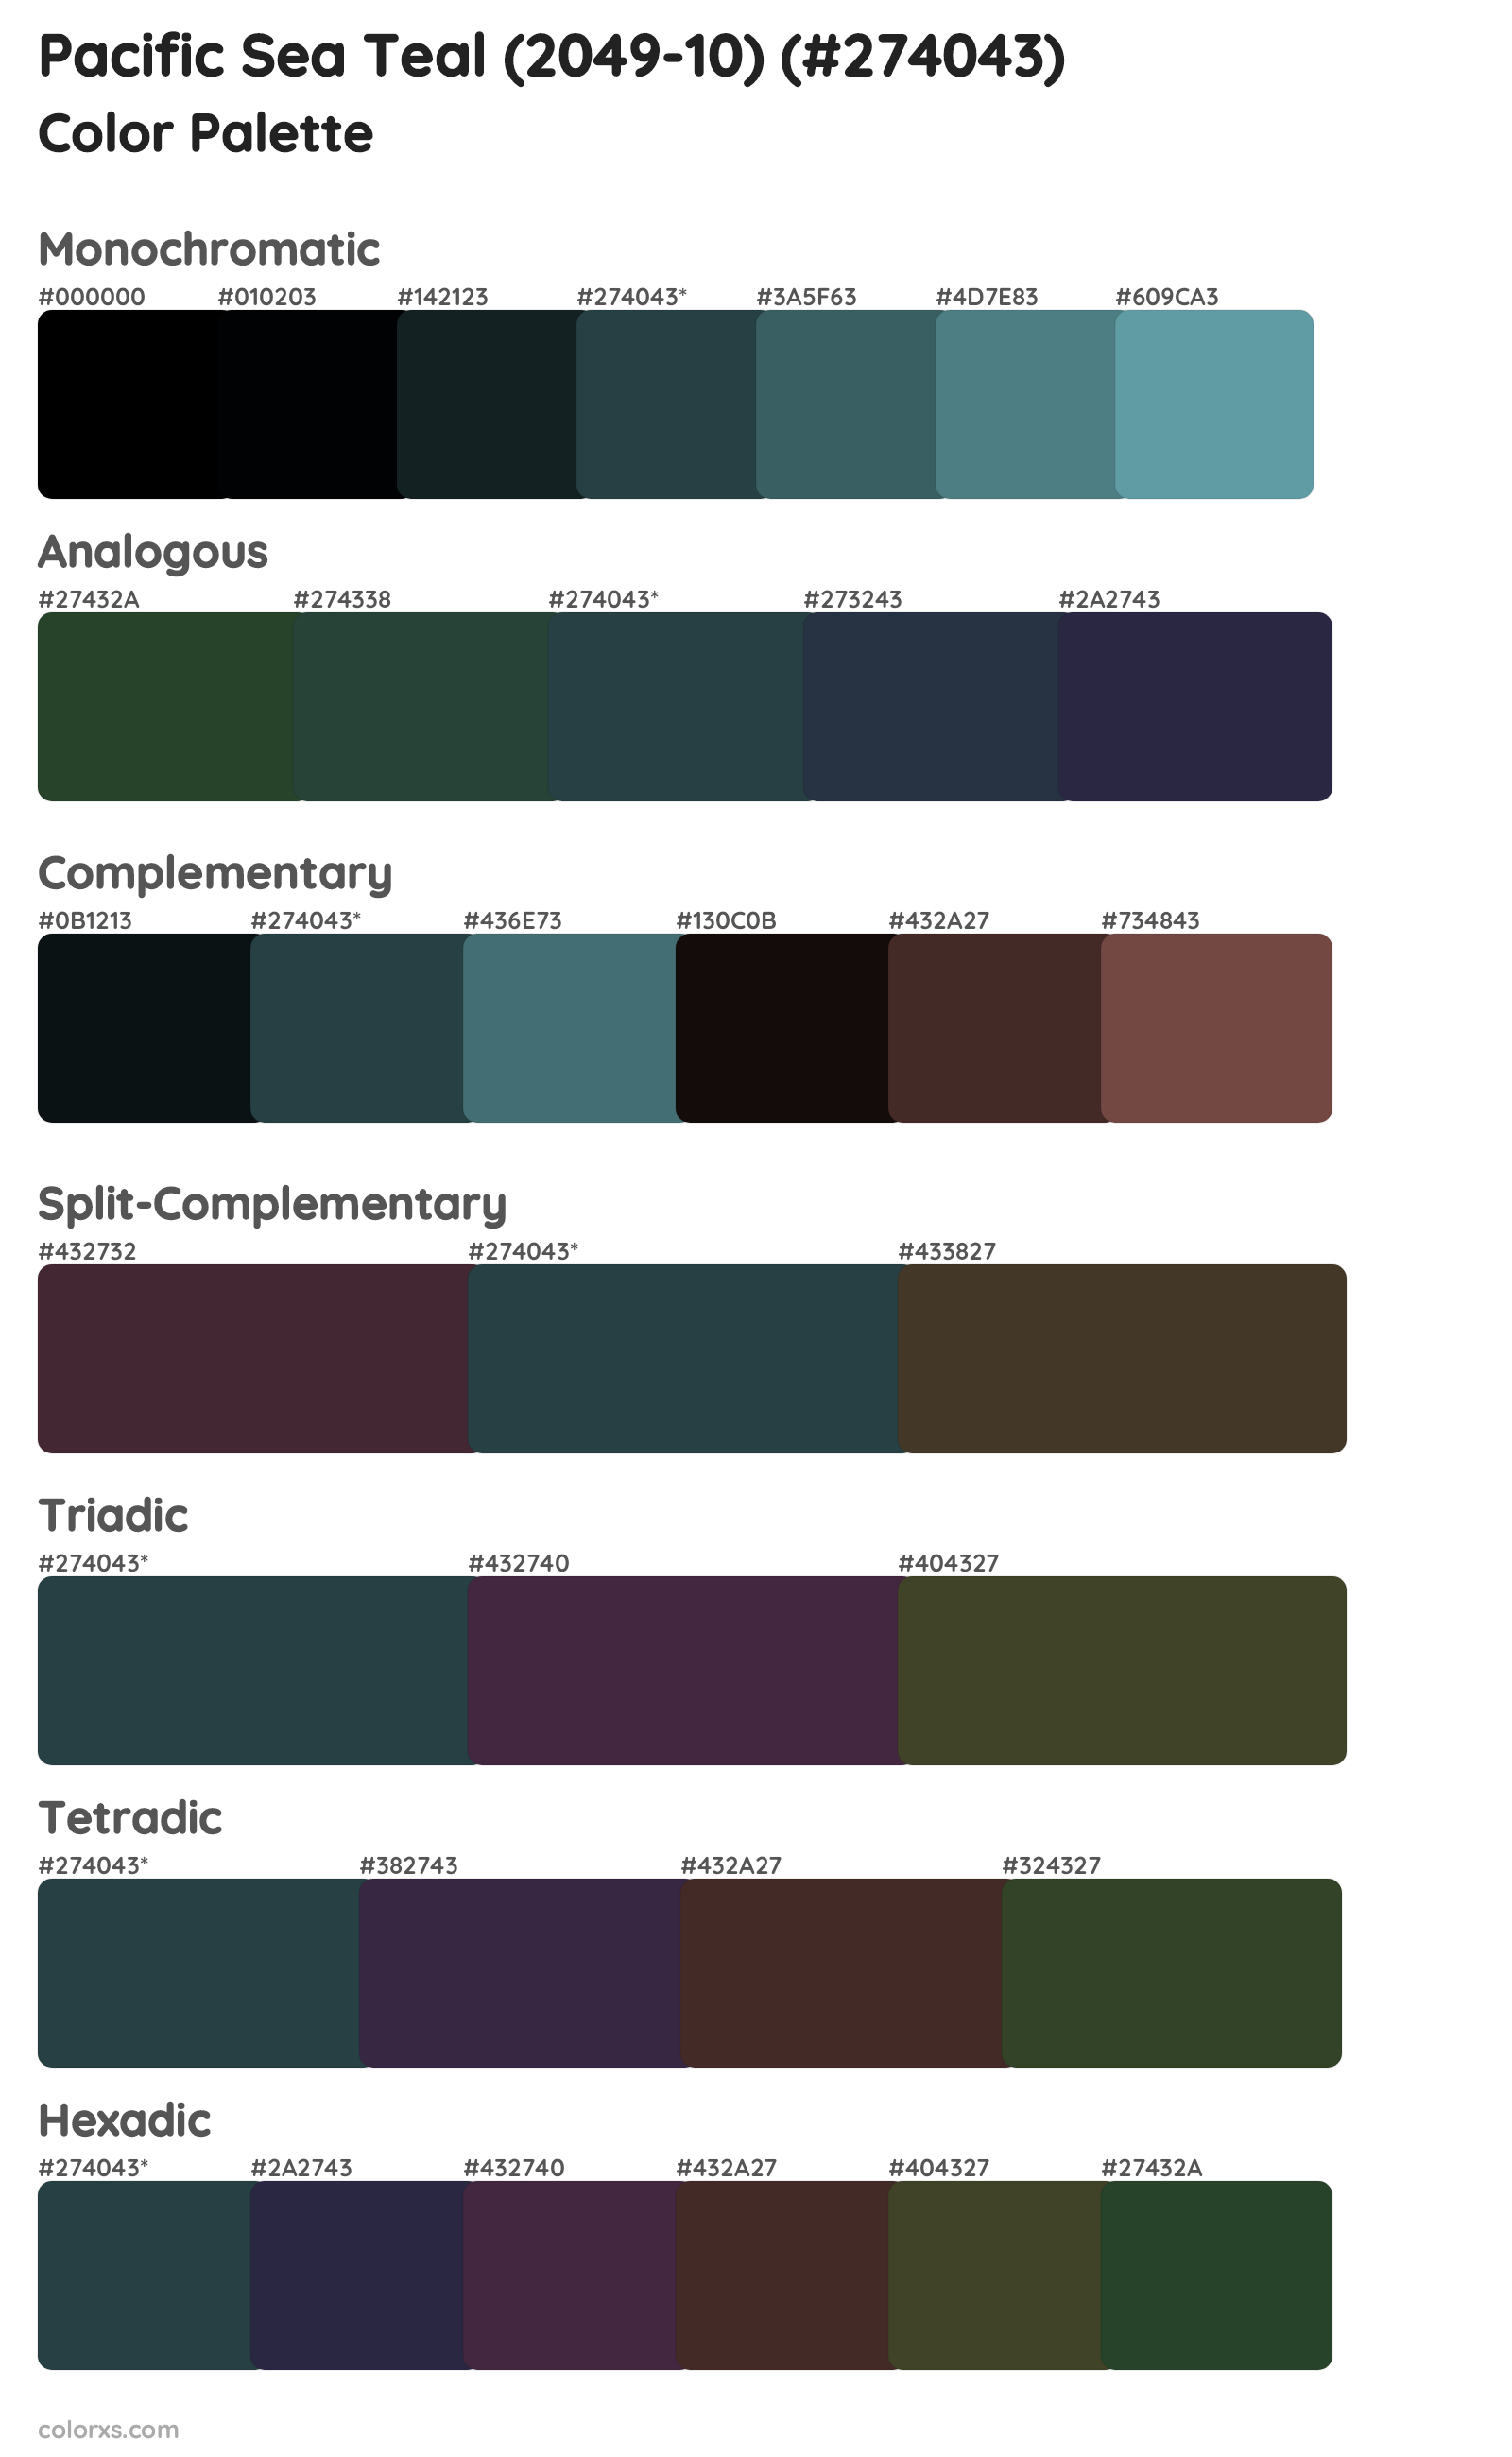 Pacific Sea Teal (2049-10) Color Scheme Palettes